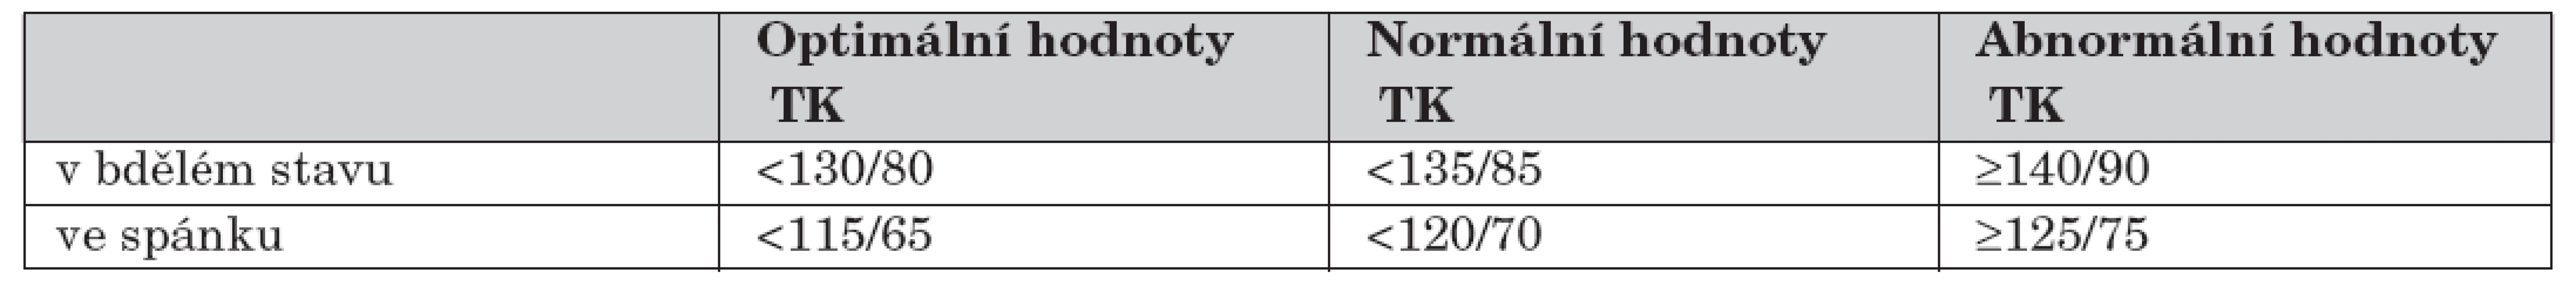 Normální hodnoty TK při ABPM dospělých osob podle EHS 2003 [44].